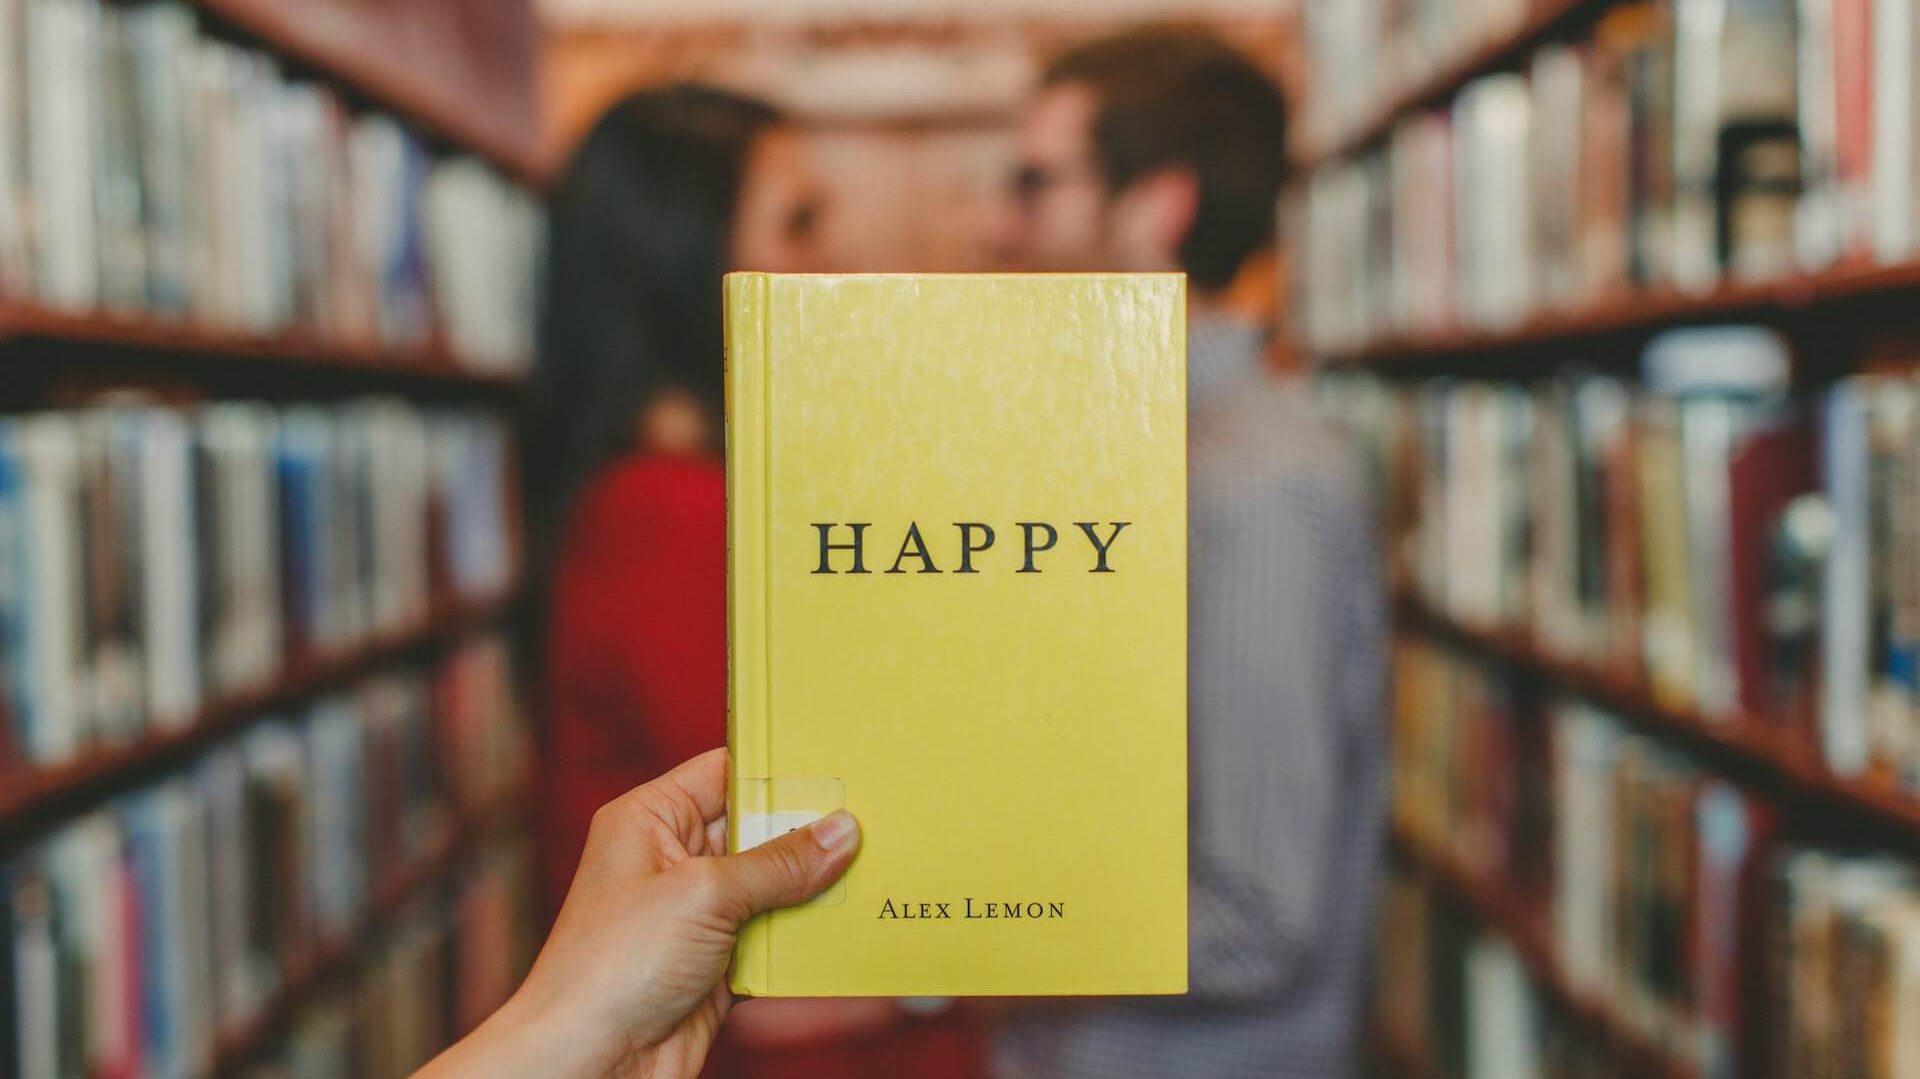 Scena di biblioteca con una coppia sullo sfondo e una persona che tiene in mano un libro giallo intitolato 'Happy'